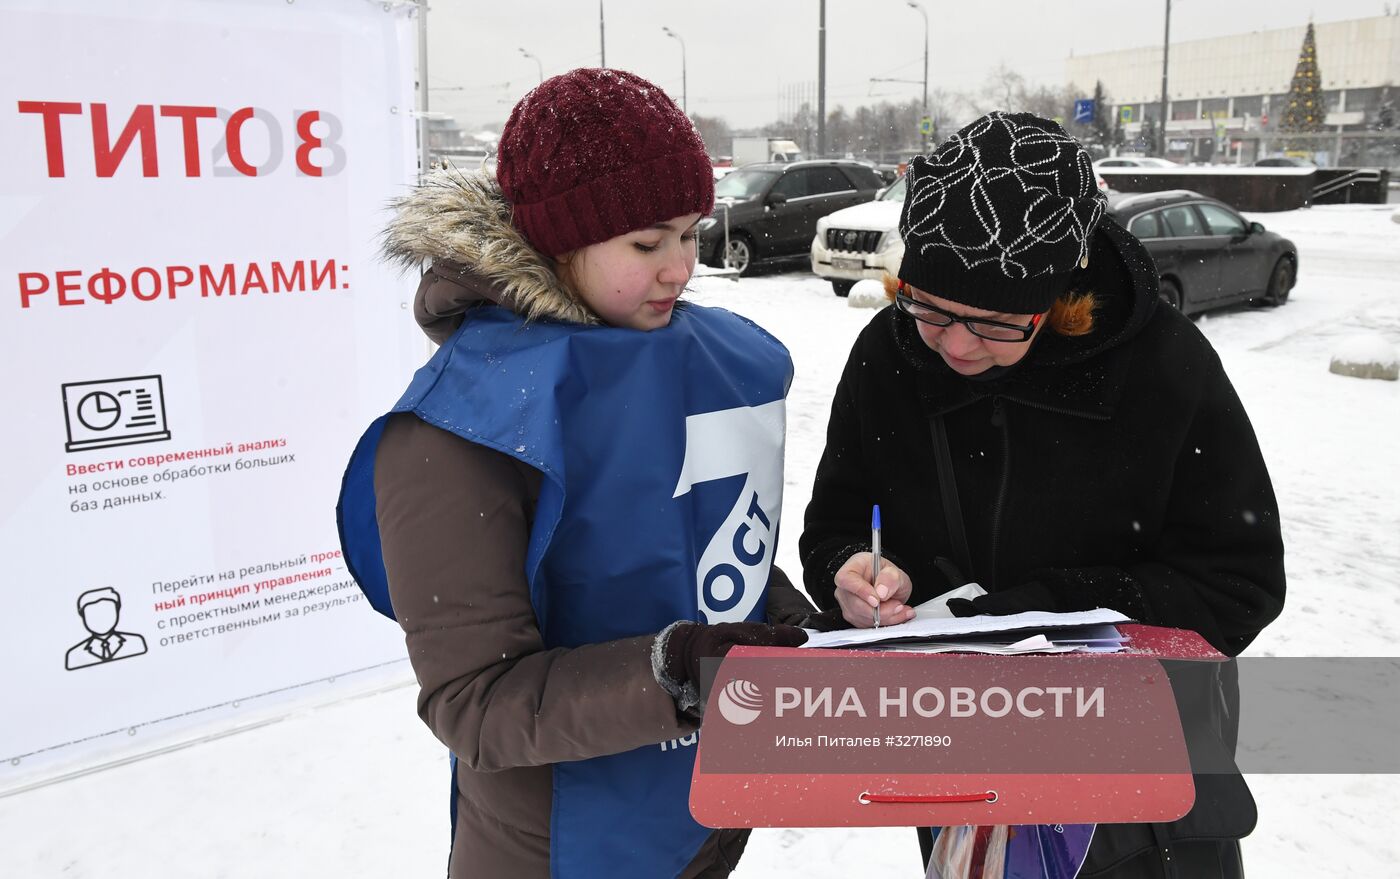 Сбор подписей в поддержку Б. Титова на президентских выборах в 2018 году